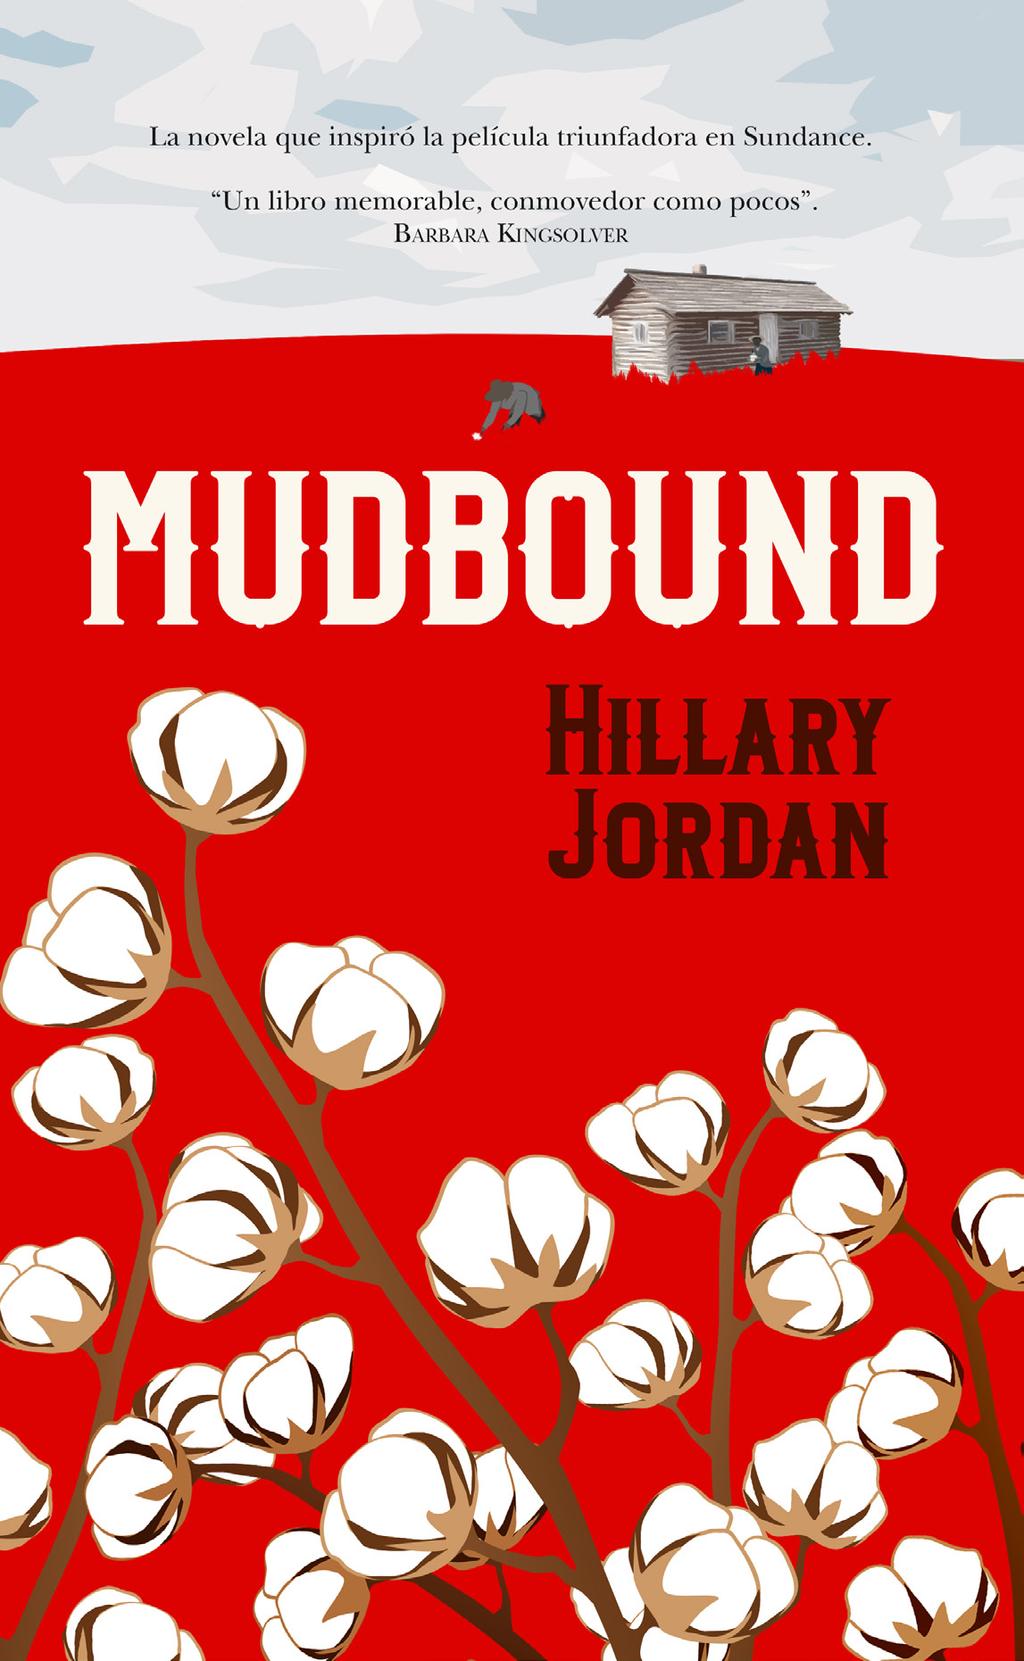 MUDBOUND En esta premiada novela de Hillary Jordan los prejuicios adquieren muchas formas, tanto sutiles como brutales.